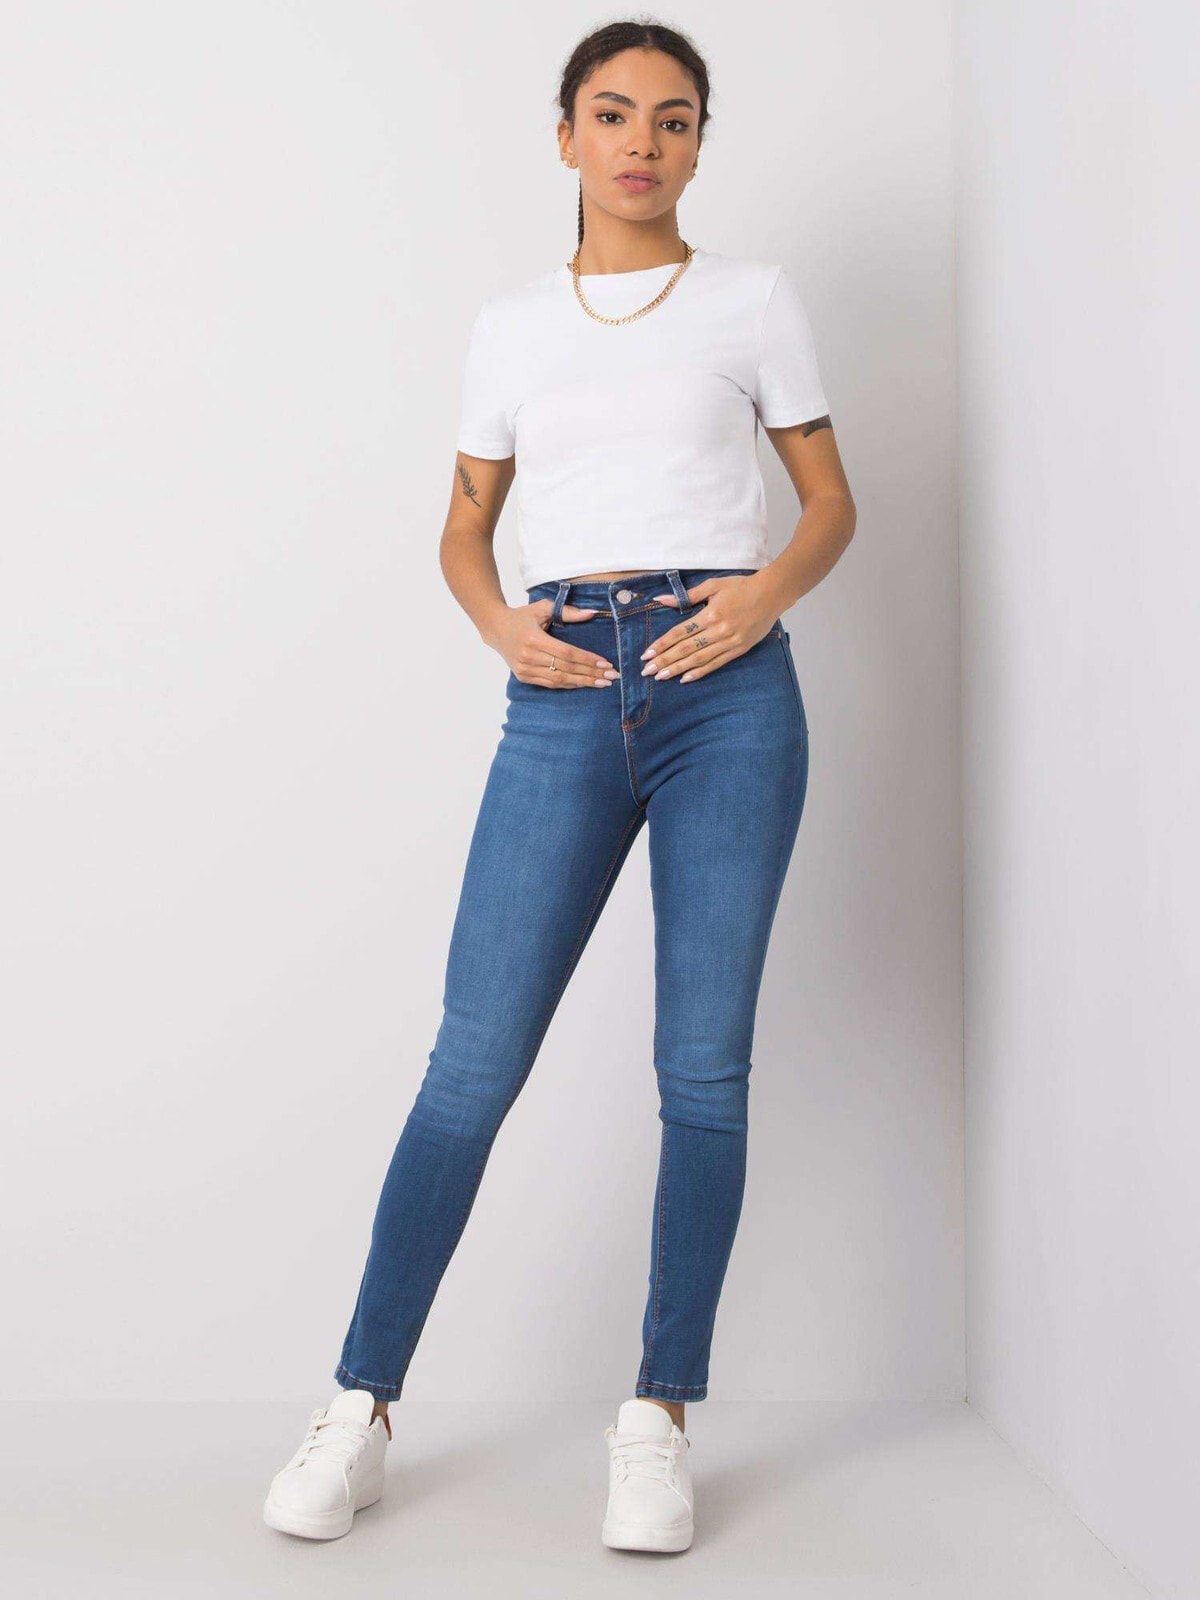 Женские джинсы  скинни с высокой посадкой синие Factory Price